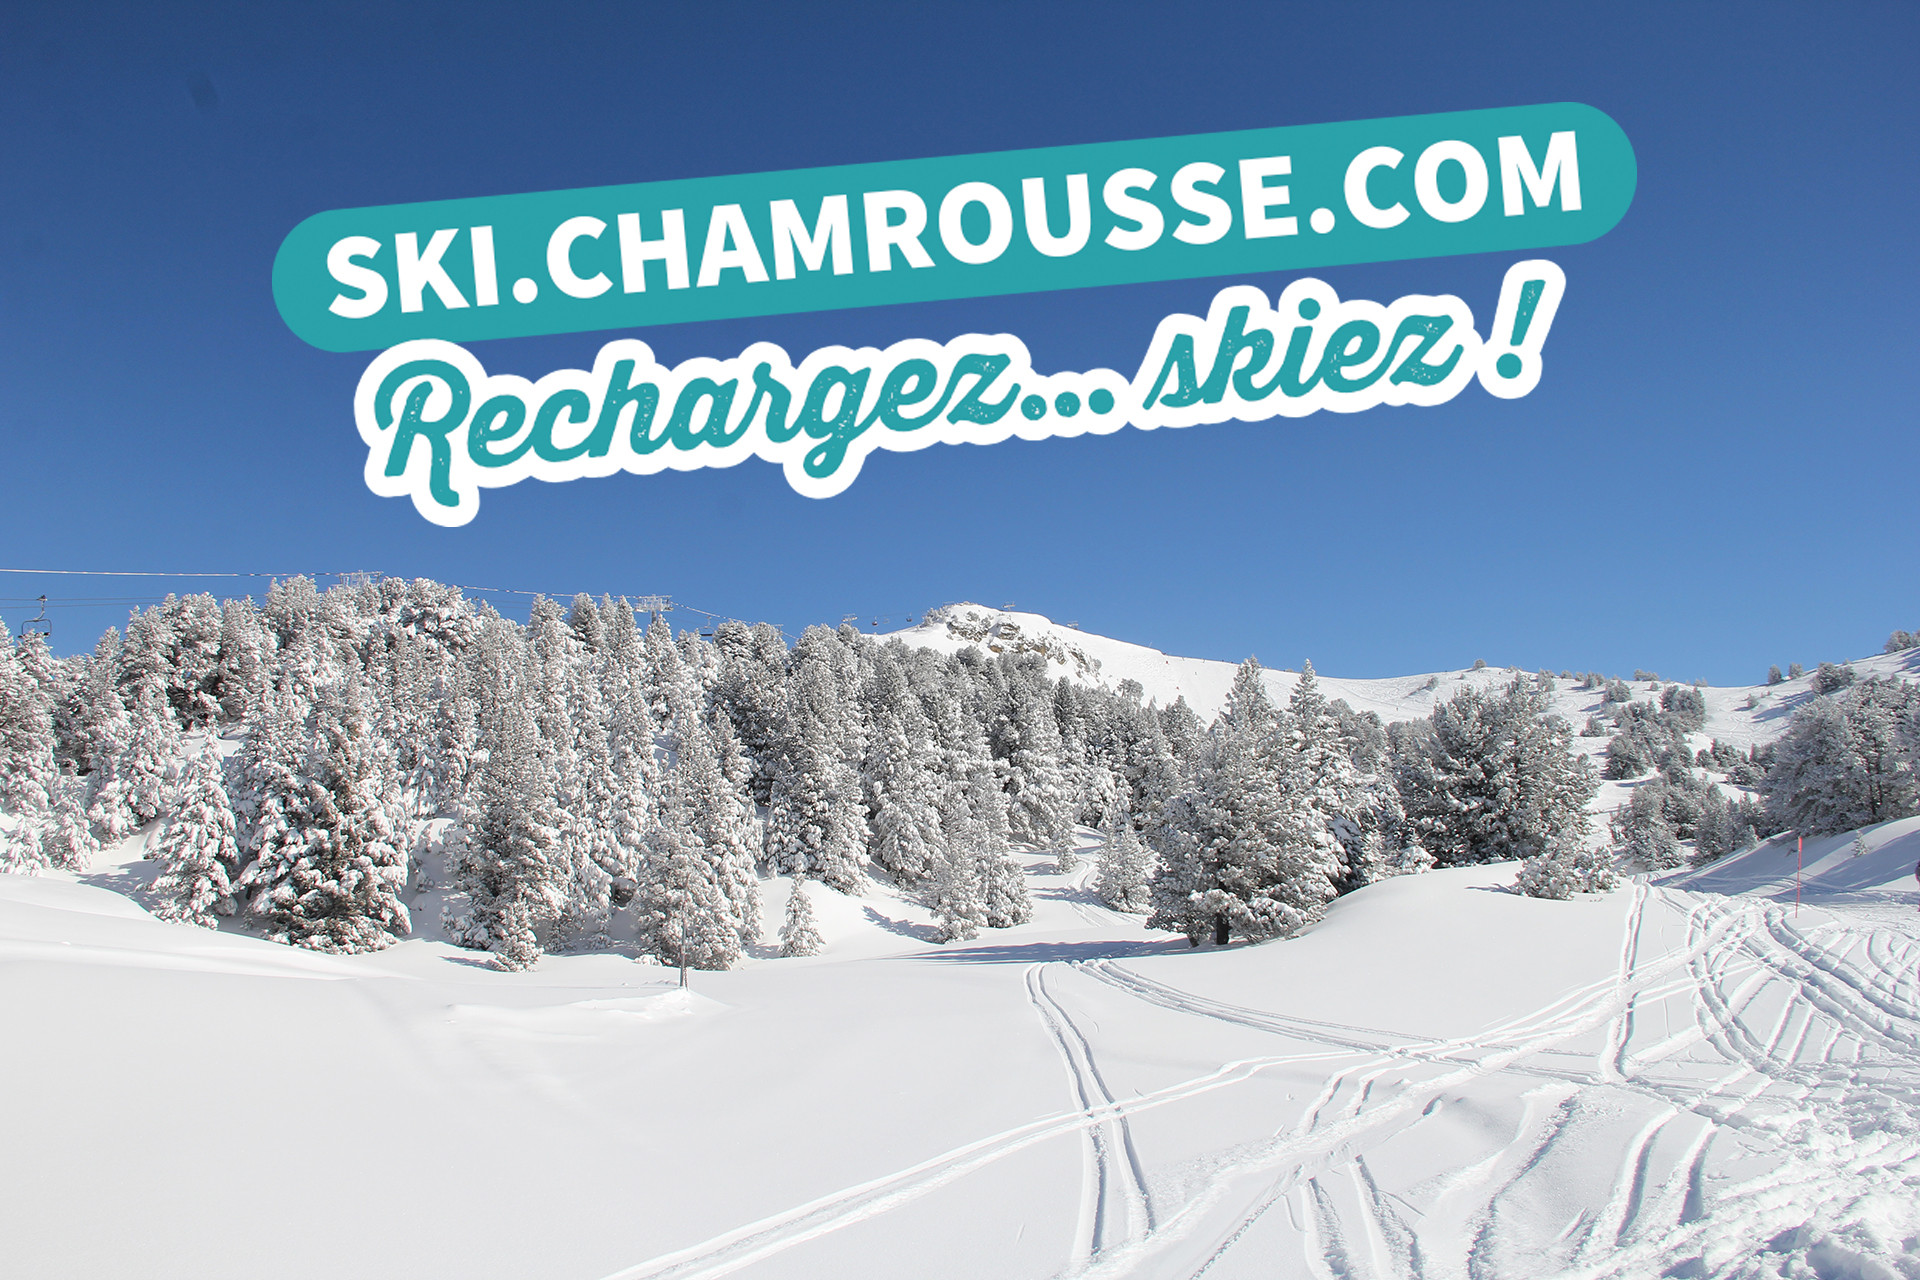 Chamrousse web skipass promotion 8% rabatt berg skigebiet grenoble lyon isere französische alpen frankreich